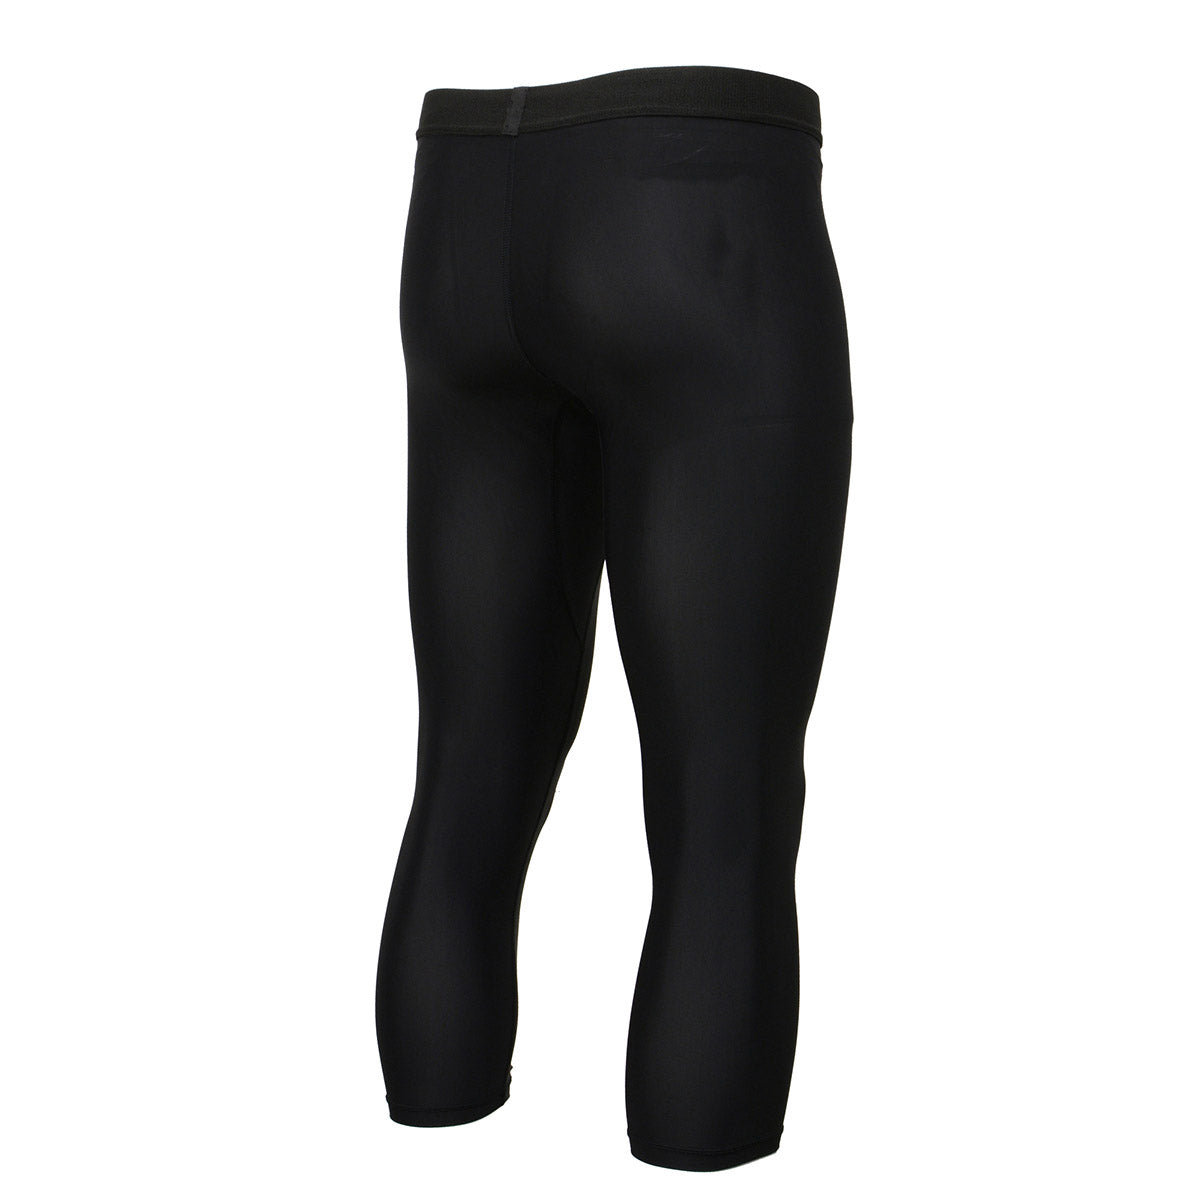 X-Fitness XFM7003 Men's Black 3/4 Length Compression Base Layer Workout Pants Jiu Jitsu Spats Tights